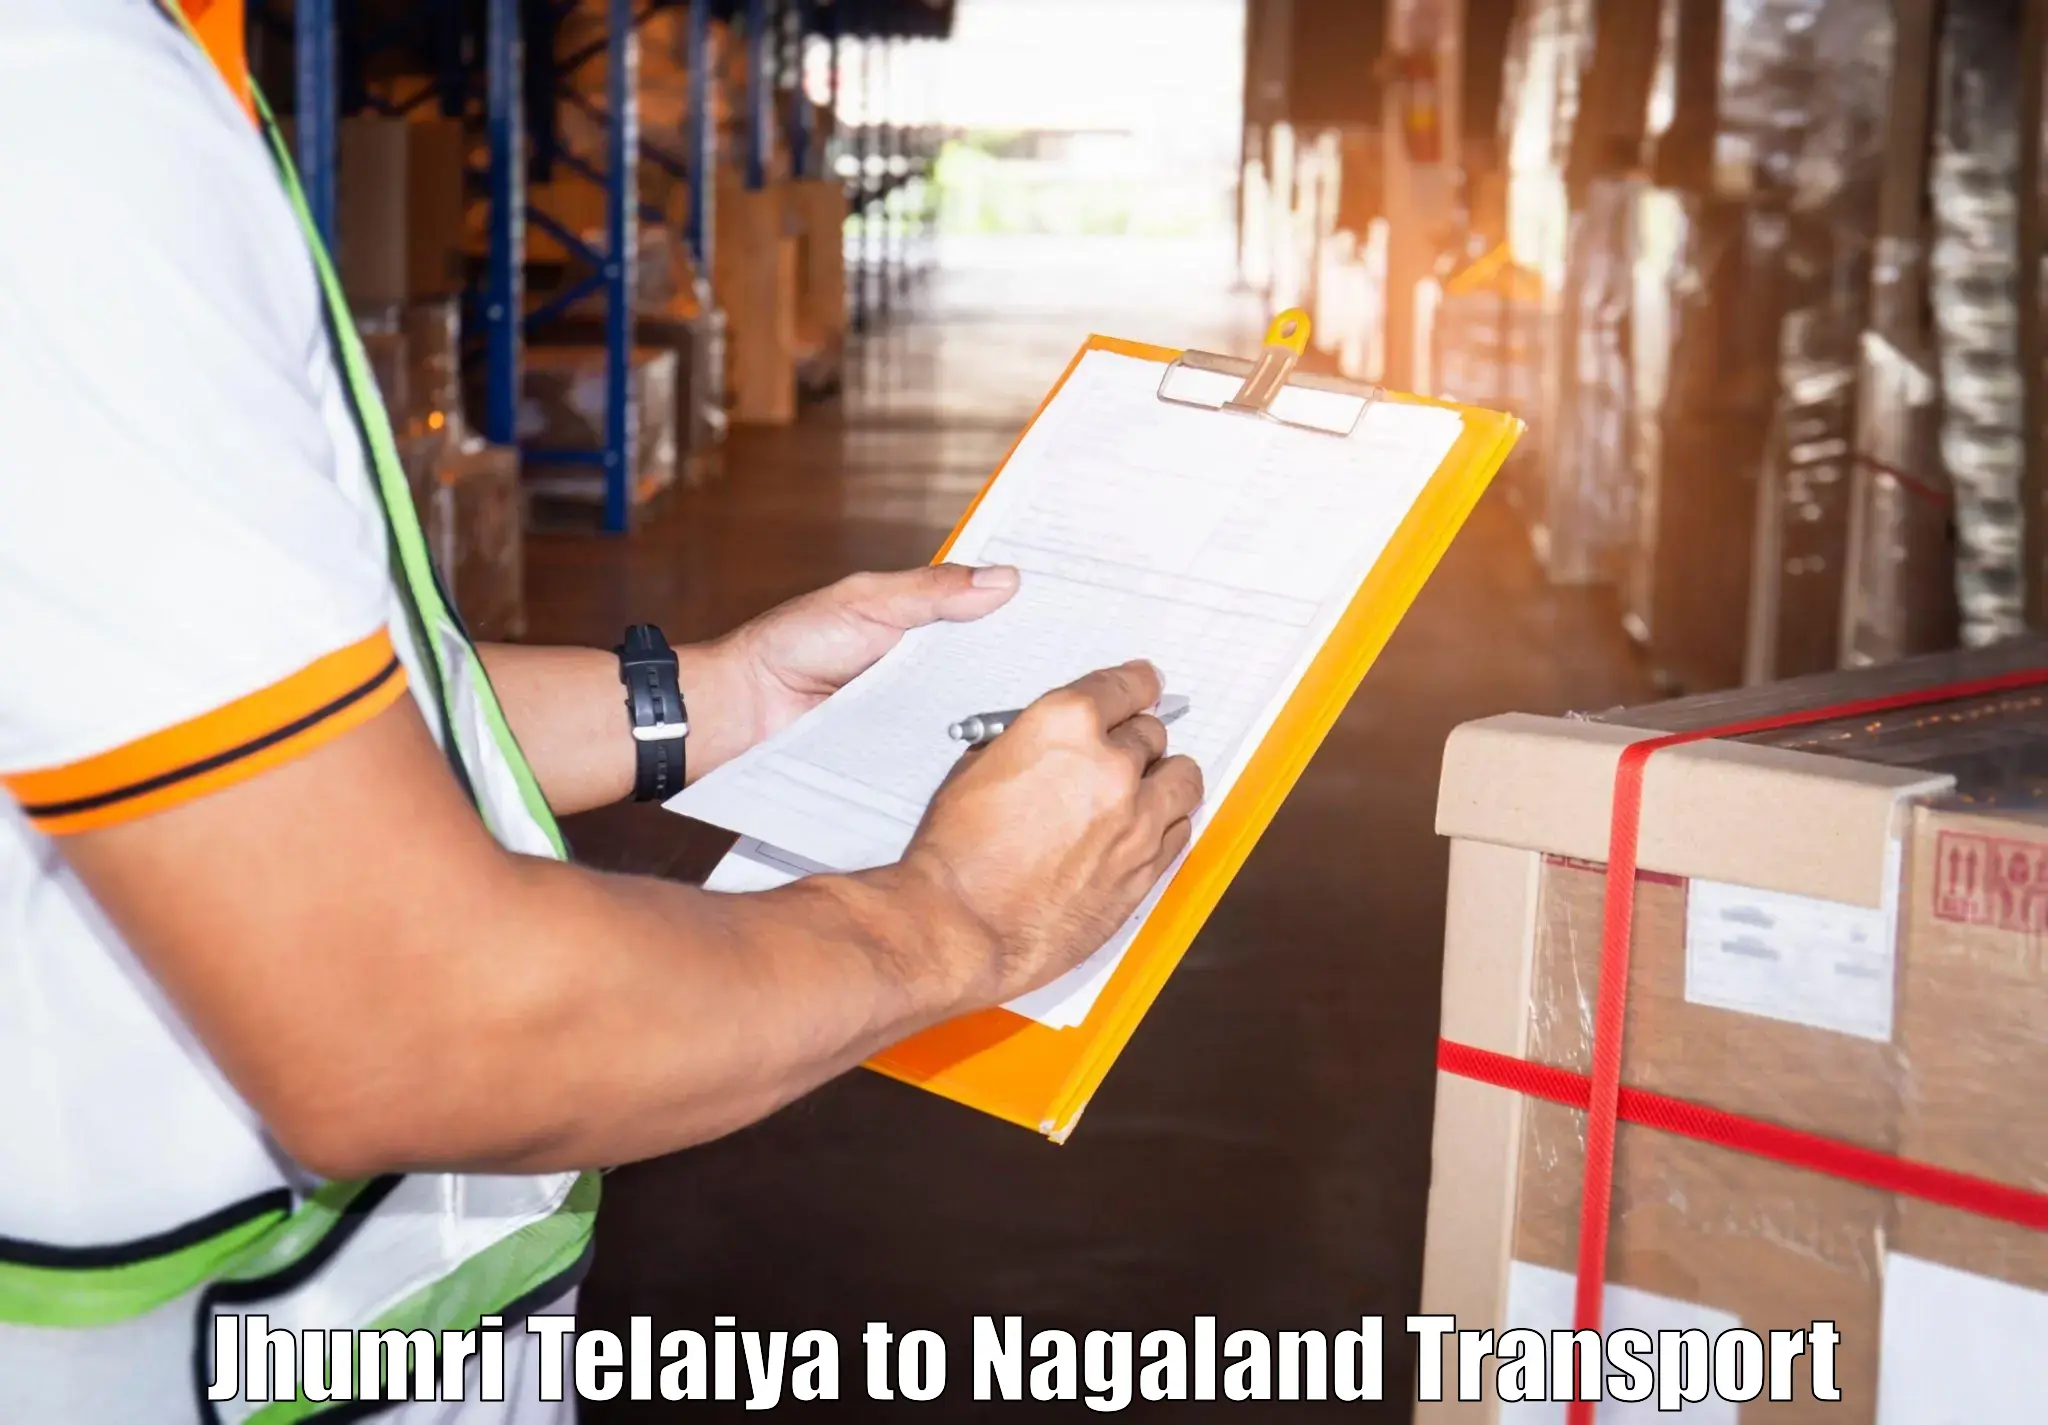 Cargo transport services Jhumri Telaiya to Nagaland